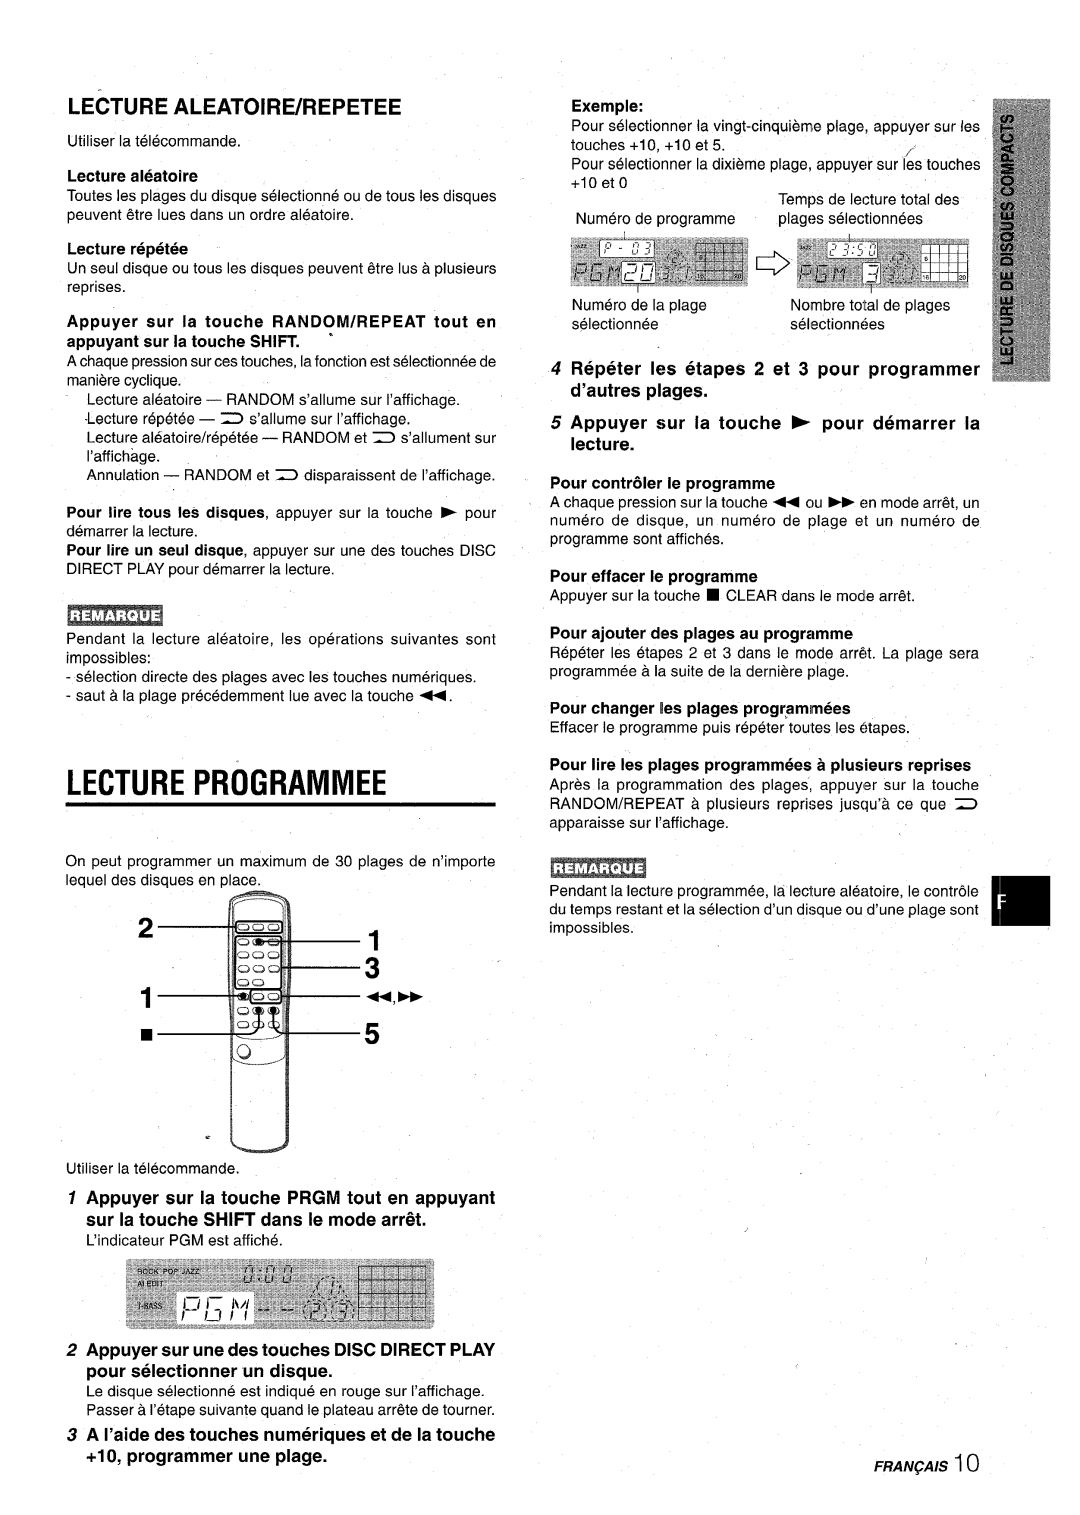 Aiwa CX-NA22 manual Lecture Programmed, Lecture Aleatoire/Repetee, Repeter k etapes 2 et 3 pour programmer d’autres plages 